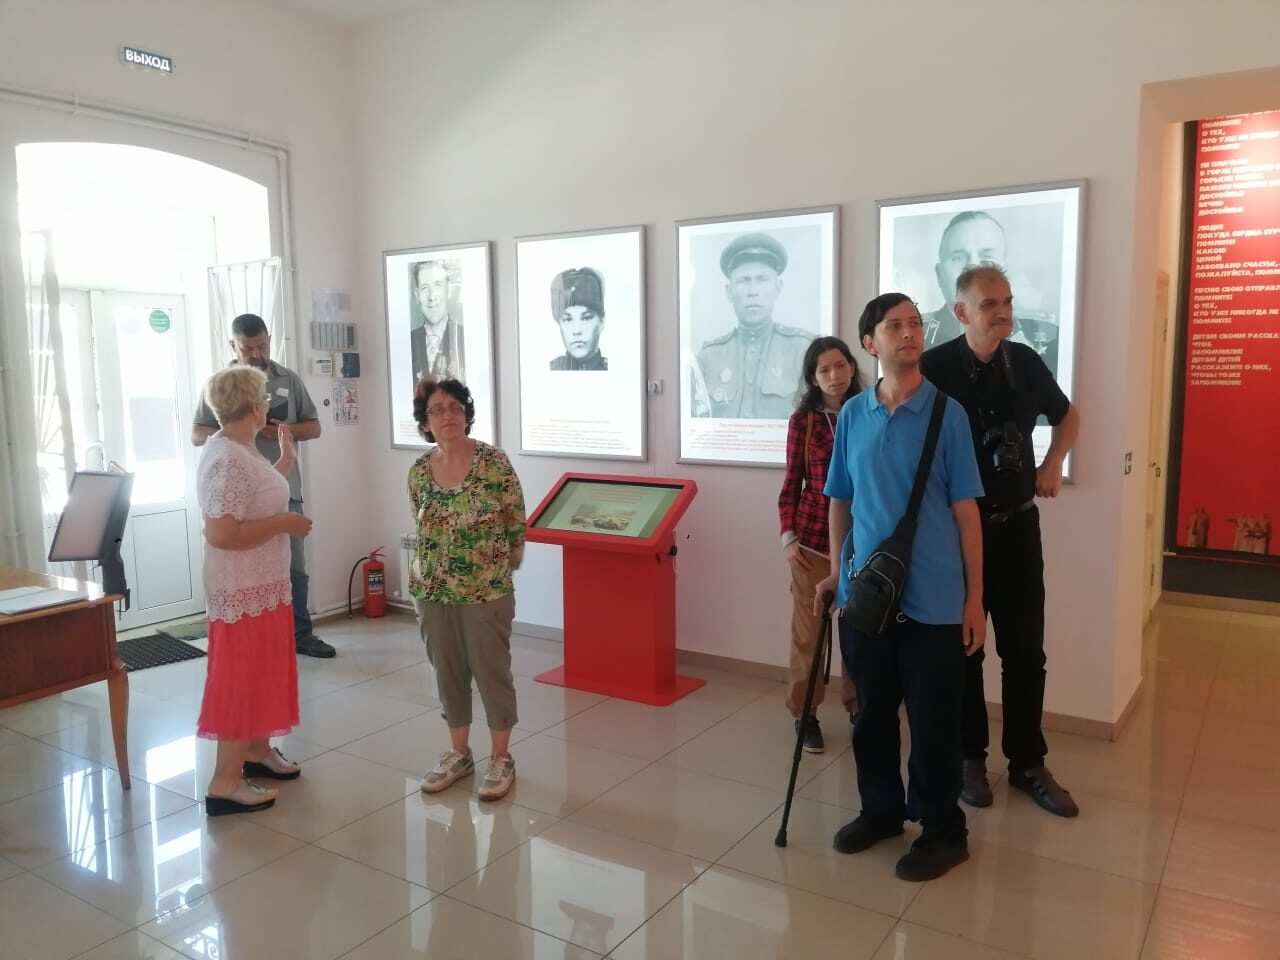 Работники музейного историко-краеведческого комплекса Петровска провели экскурсию для туристов из  Саратова